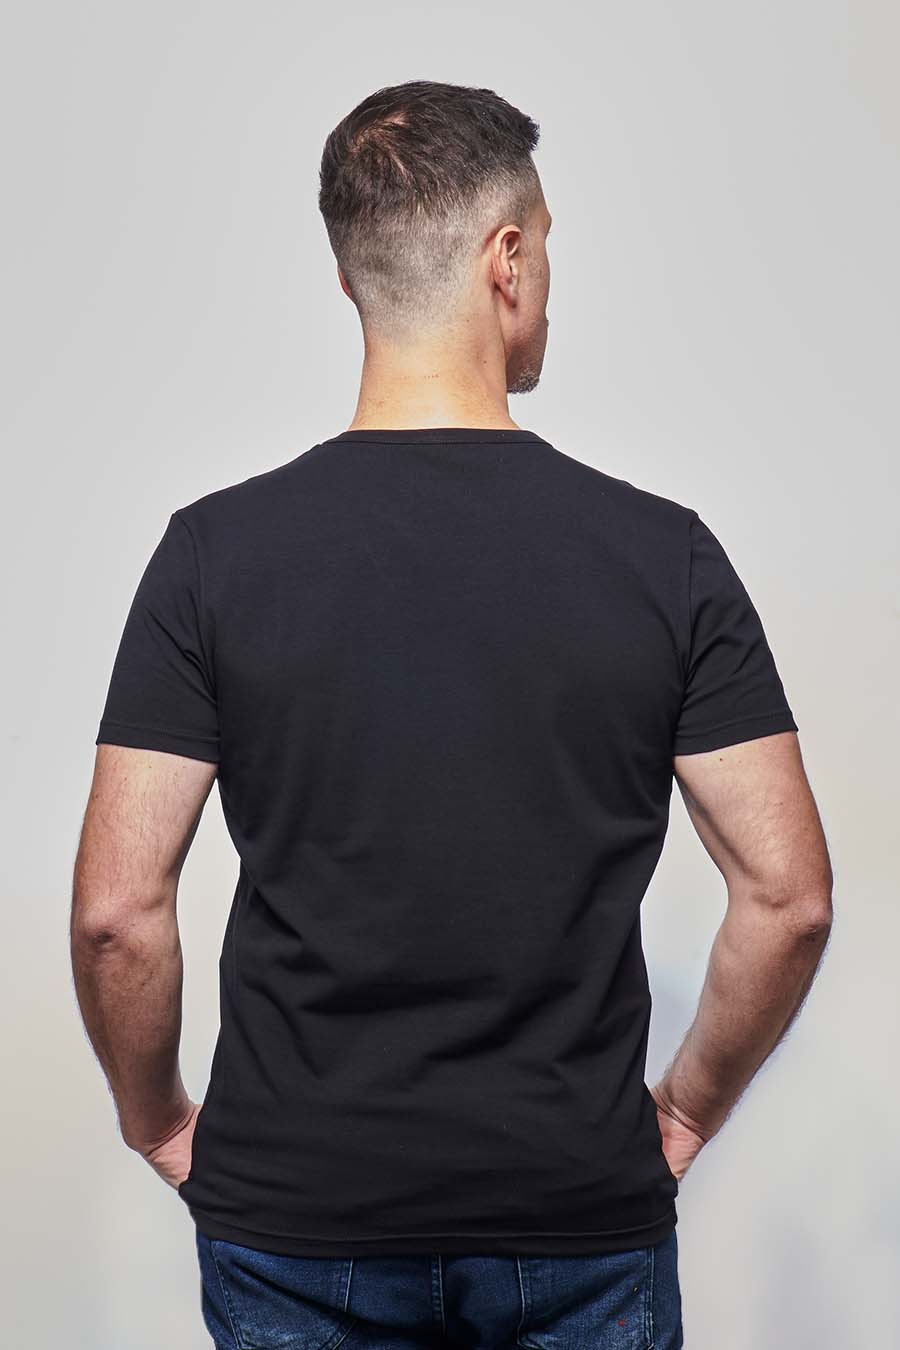 Tee-shirt homme ajusté made in France en coton bio noir - Fil Rouge